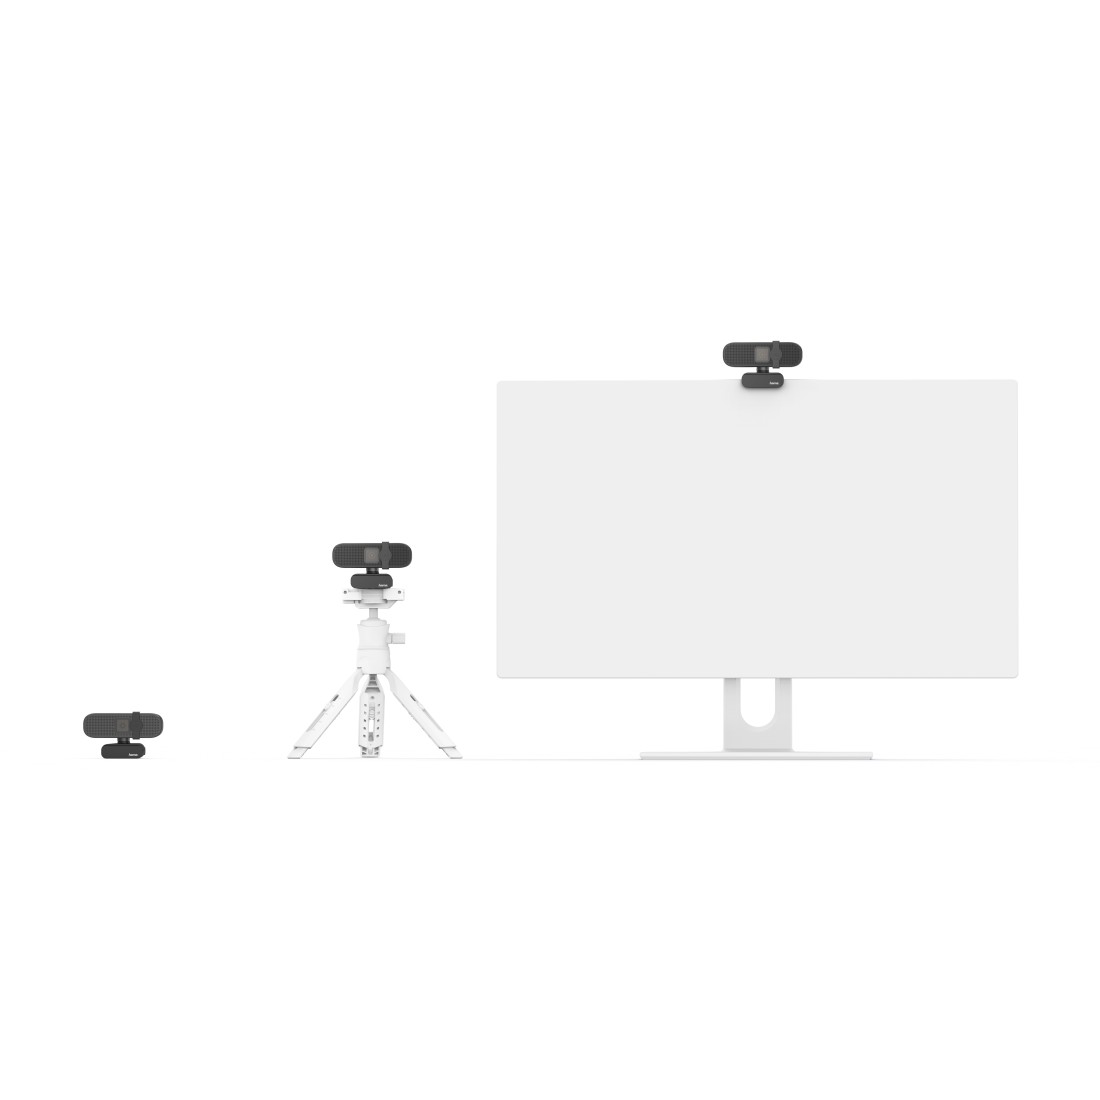 PC-Webcam C-400, 1080p - PC-Webcam C-400, 1080p